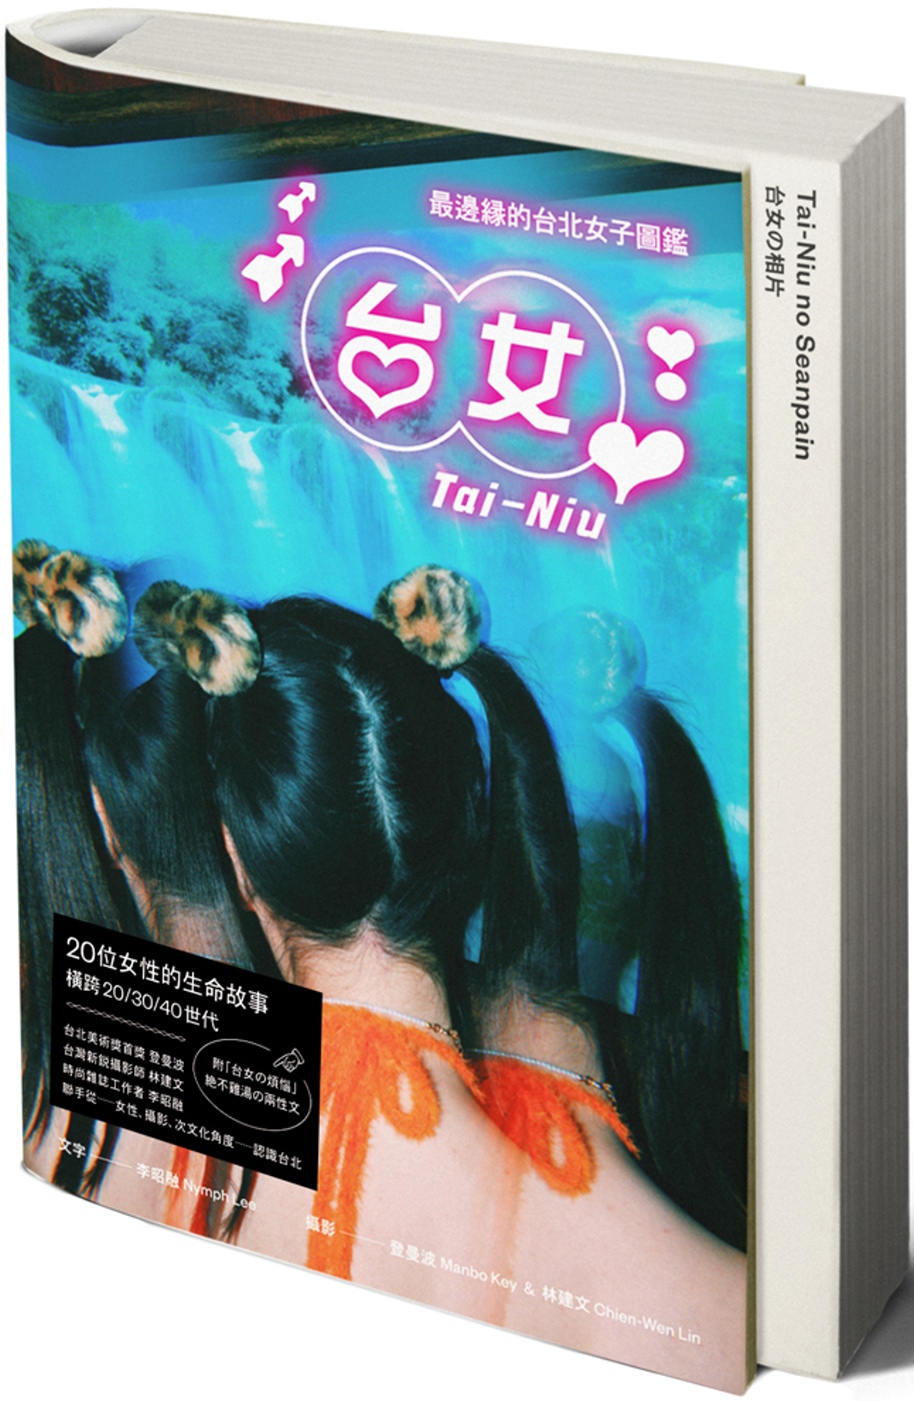 台女Tai-Niu【寫真+散文 豪華雙冊珍藏版】：最邊緣的台北女子圖鑑